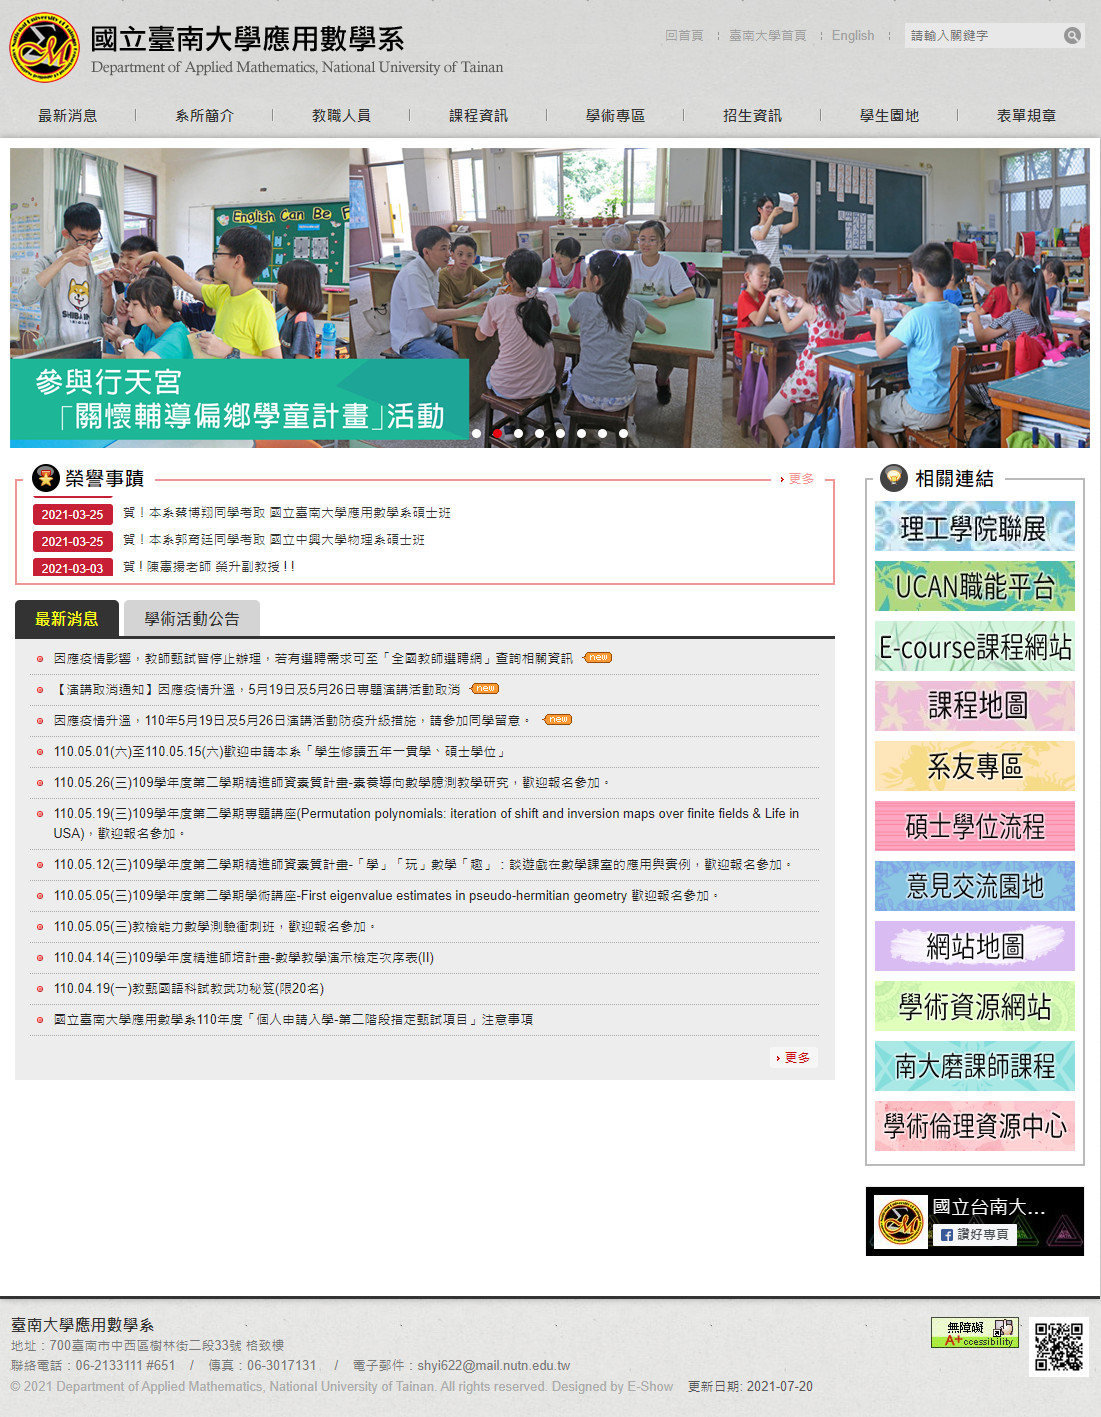 國立臺南大學應用數學系 無障礙學校系所網站設計
網站設計